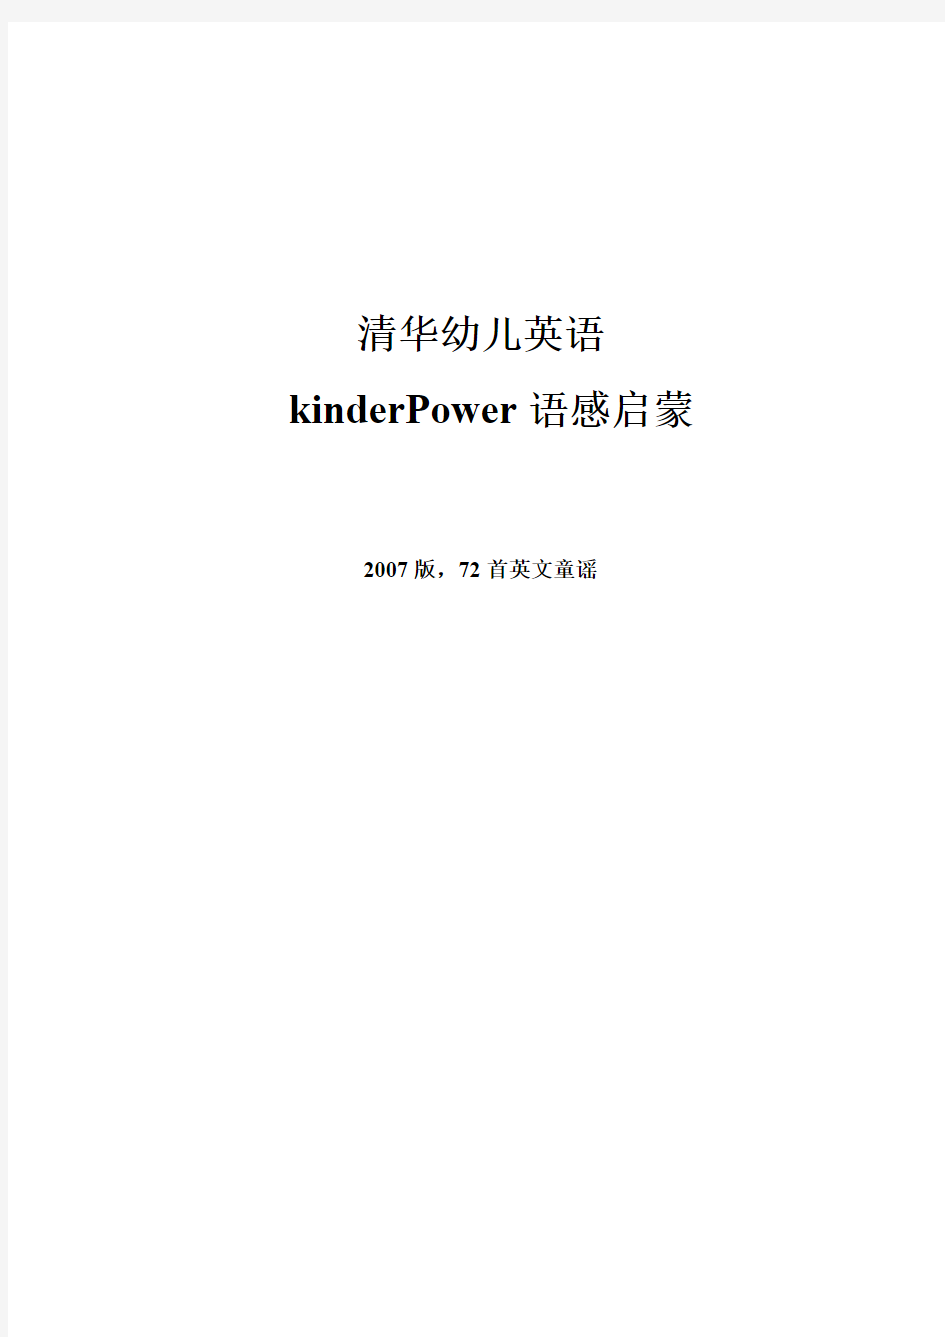 清华幼儿英语2007-KinderPower-语感启蒙